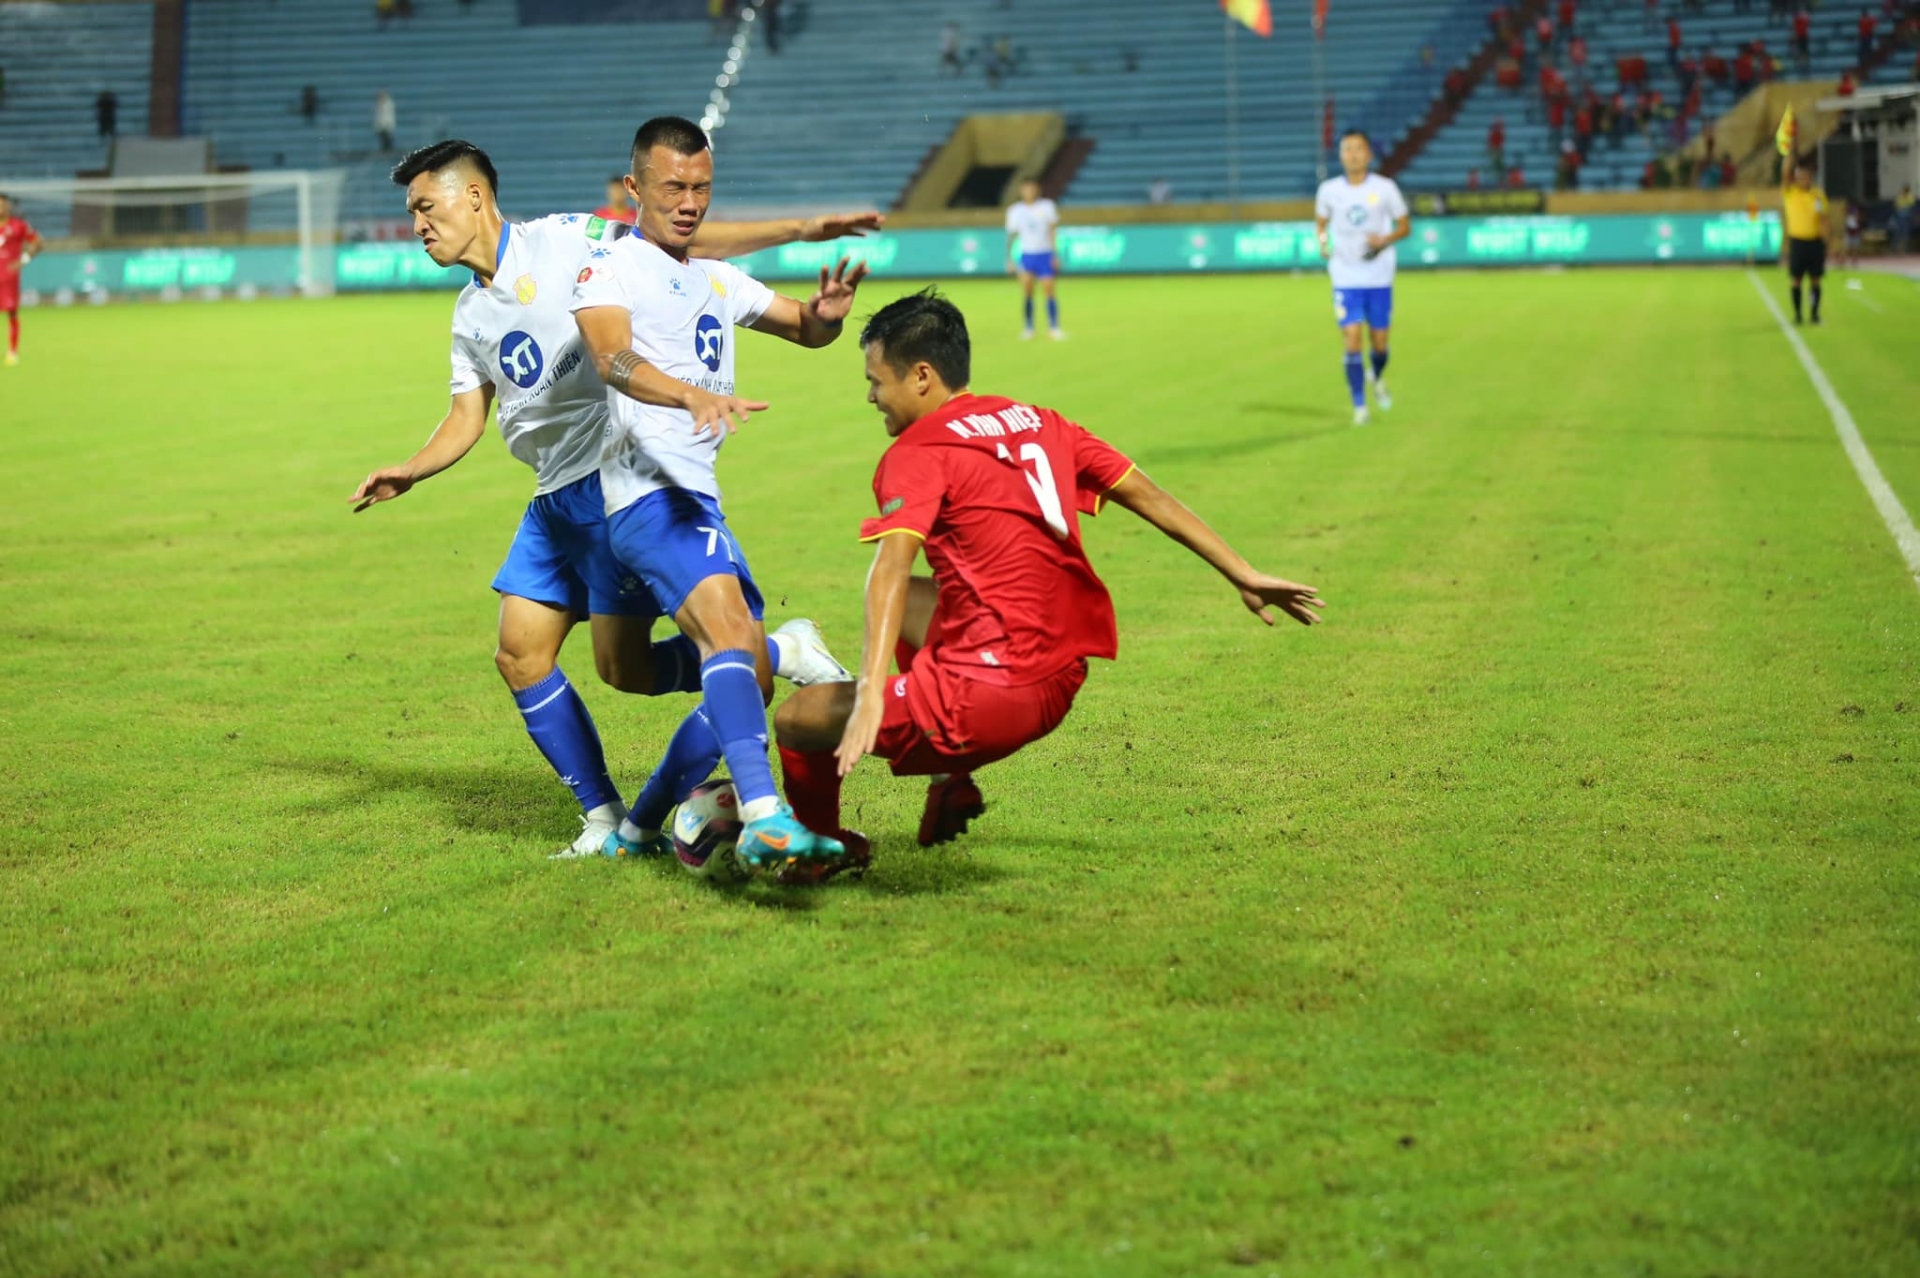 CLB Nam Định bứt phá trên BXH V-League, HLV Vũ Hồng Việt nói gì về chặng đường phía trước?